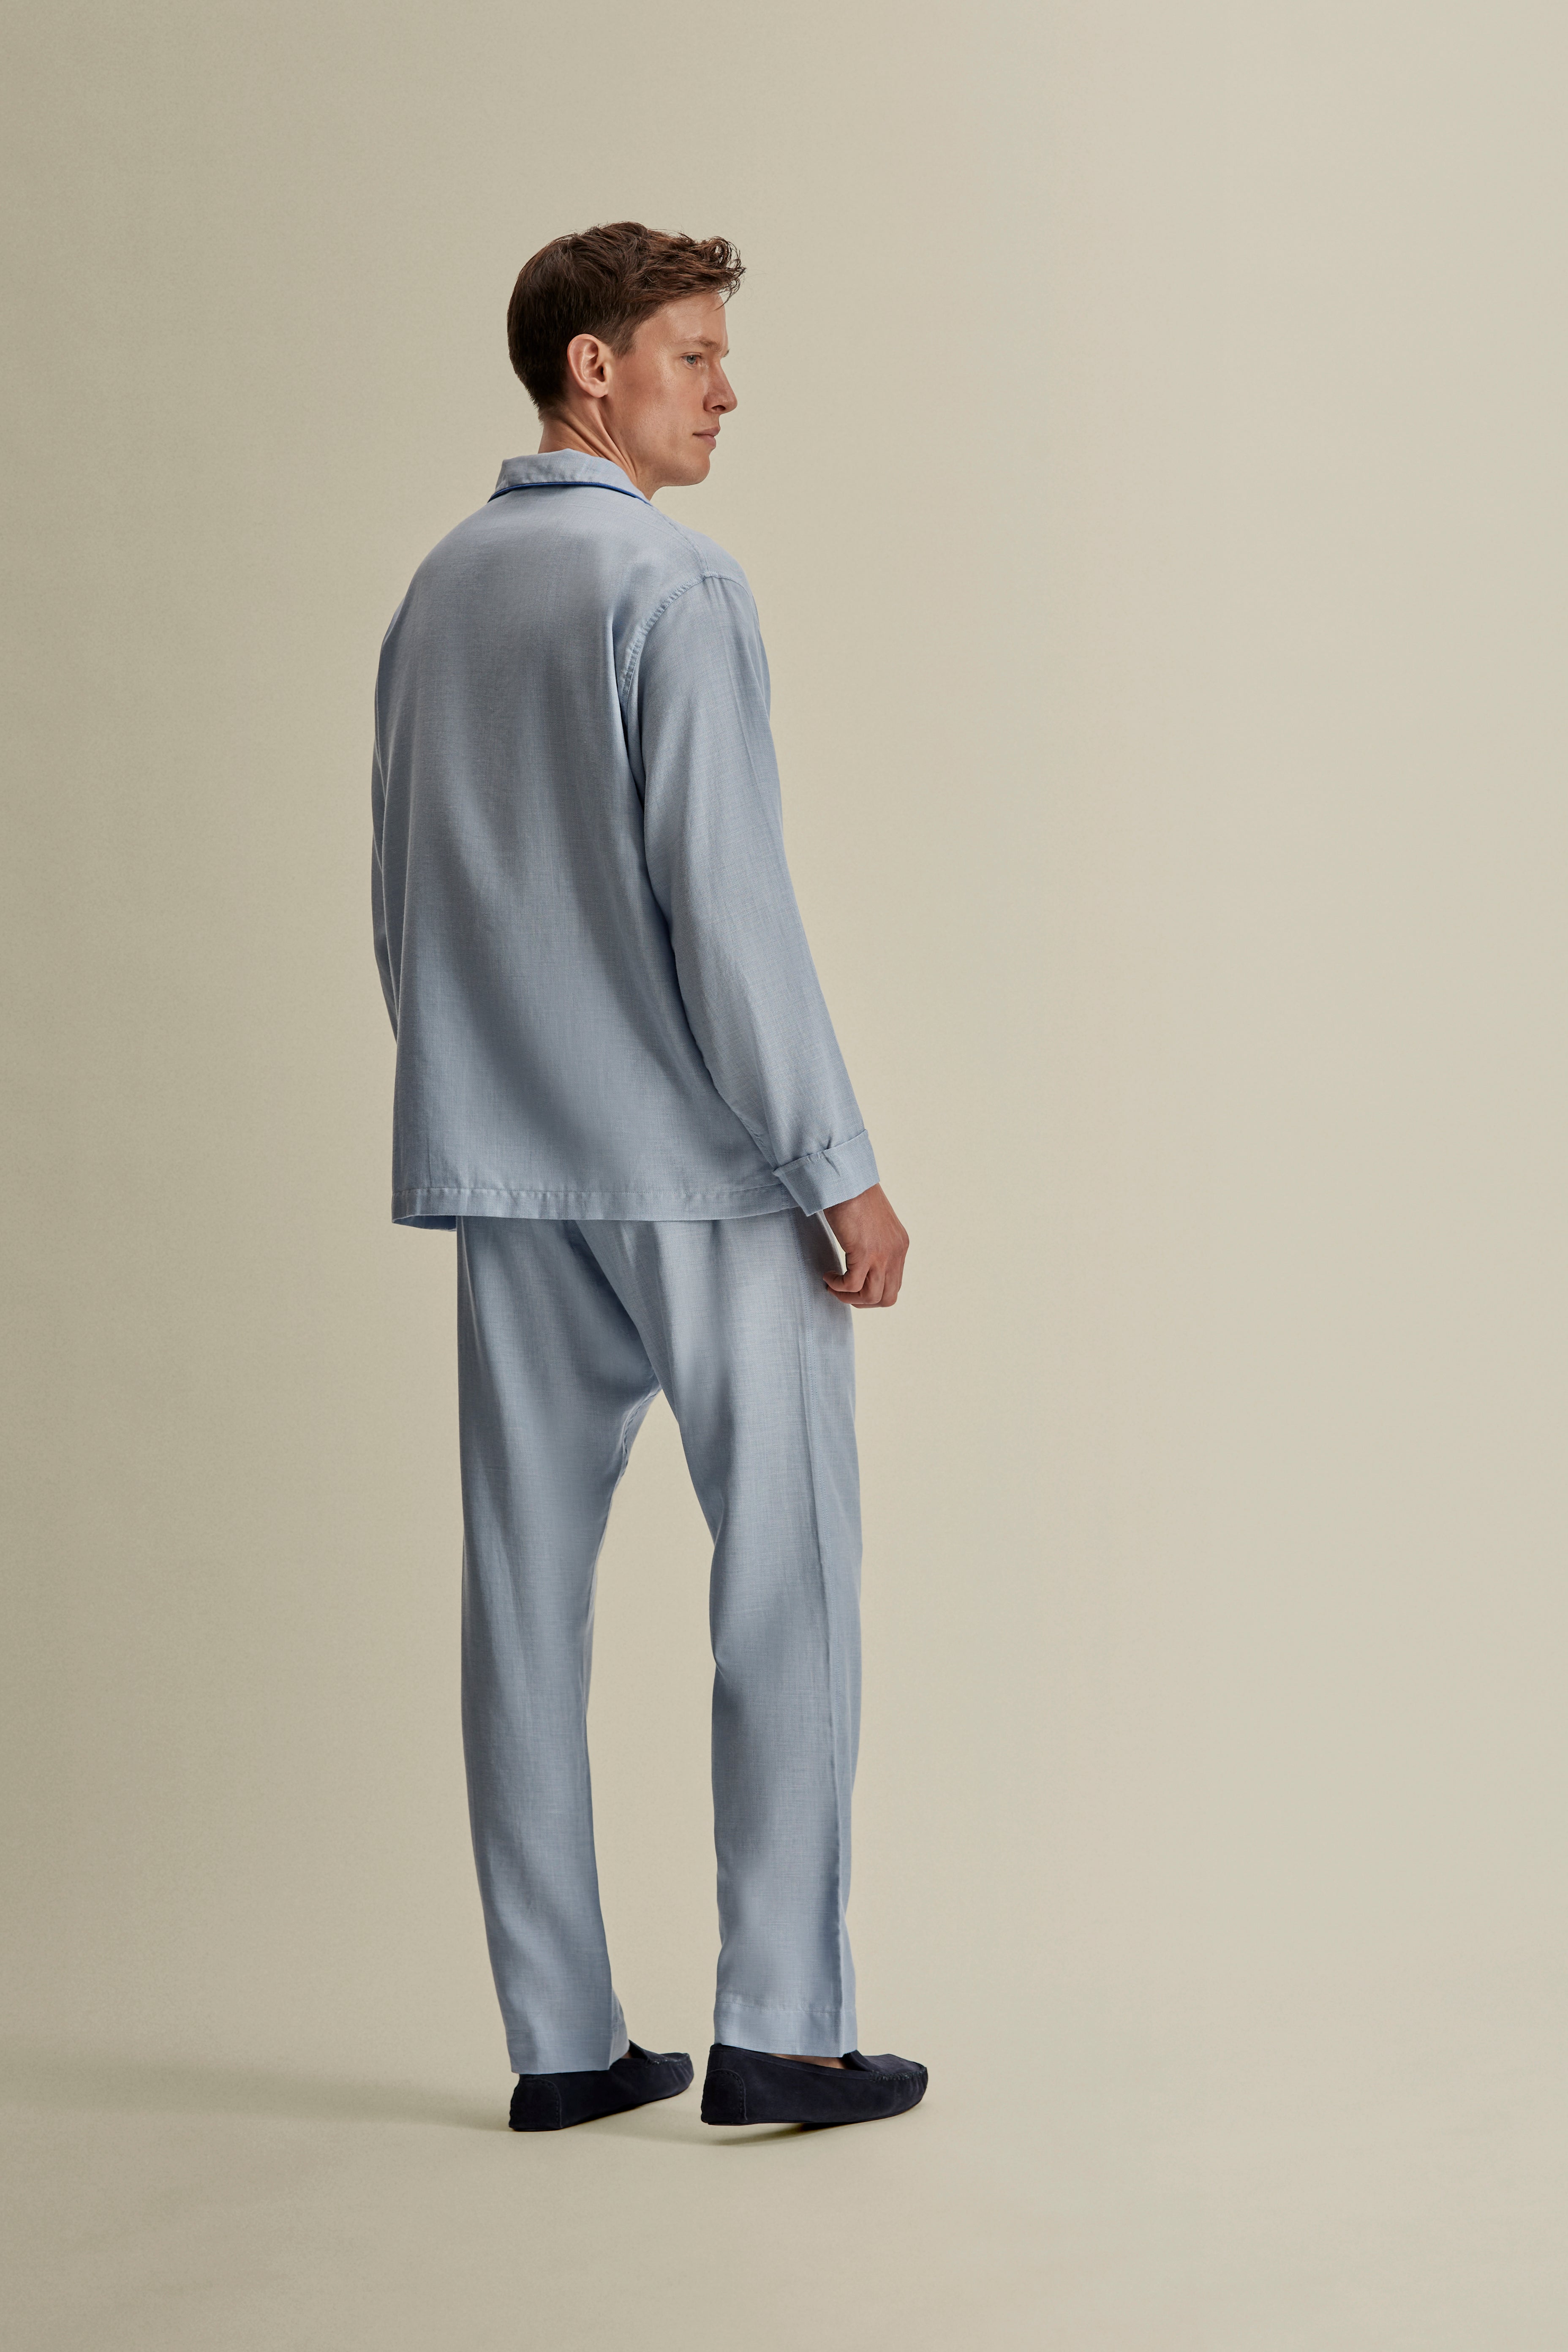 Brushed Cotton Pyjamas Sky Blue Back Full Length Image